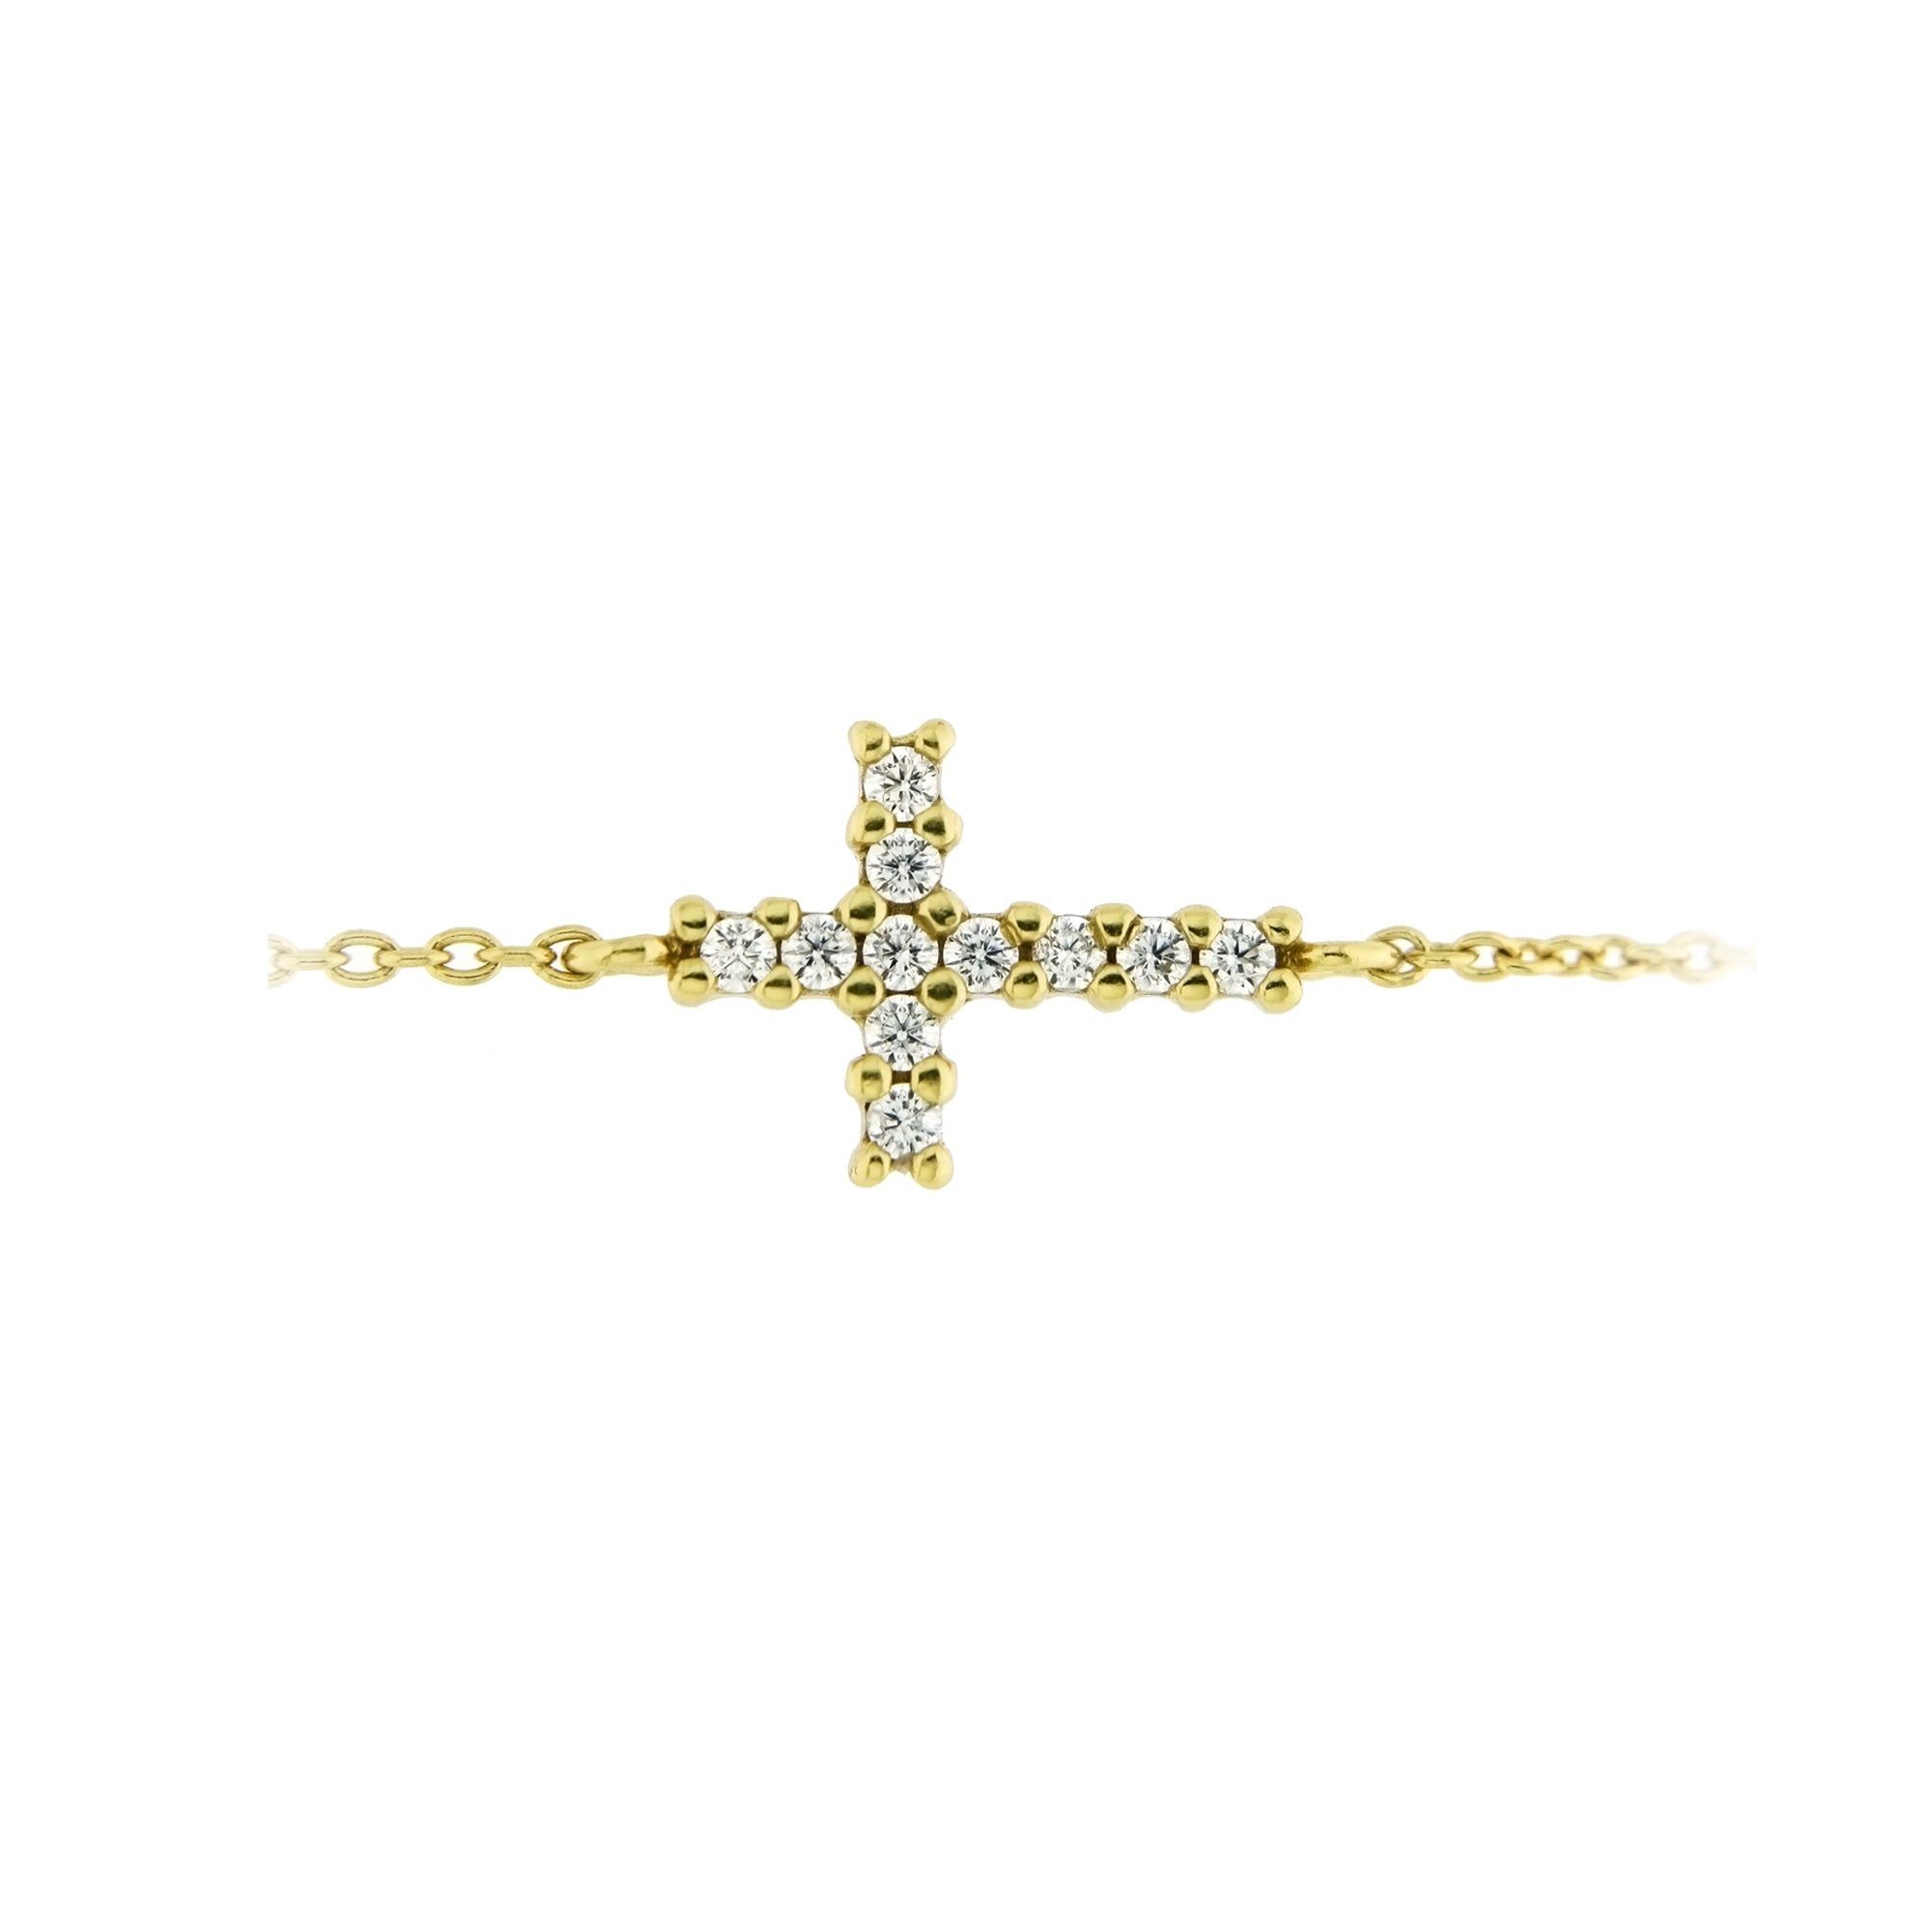 Zirkonia Armband Silber Kreuz, Mittelteil 925 Smart Steine, Jewel